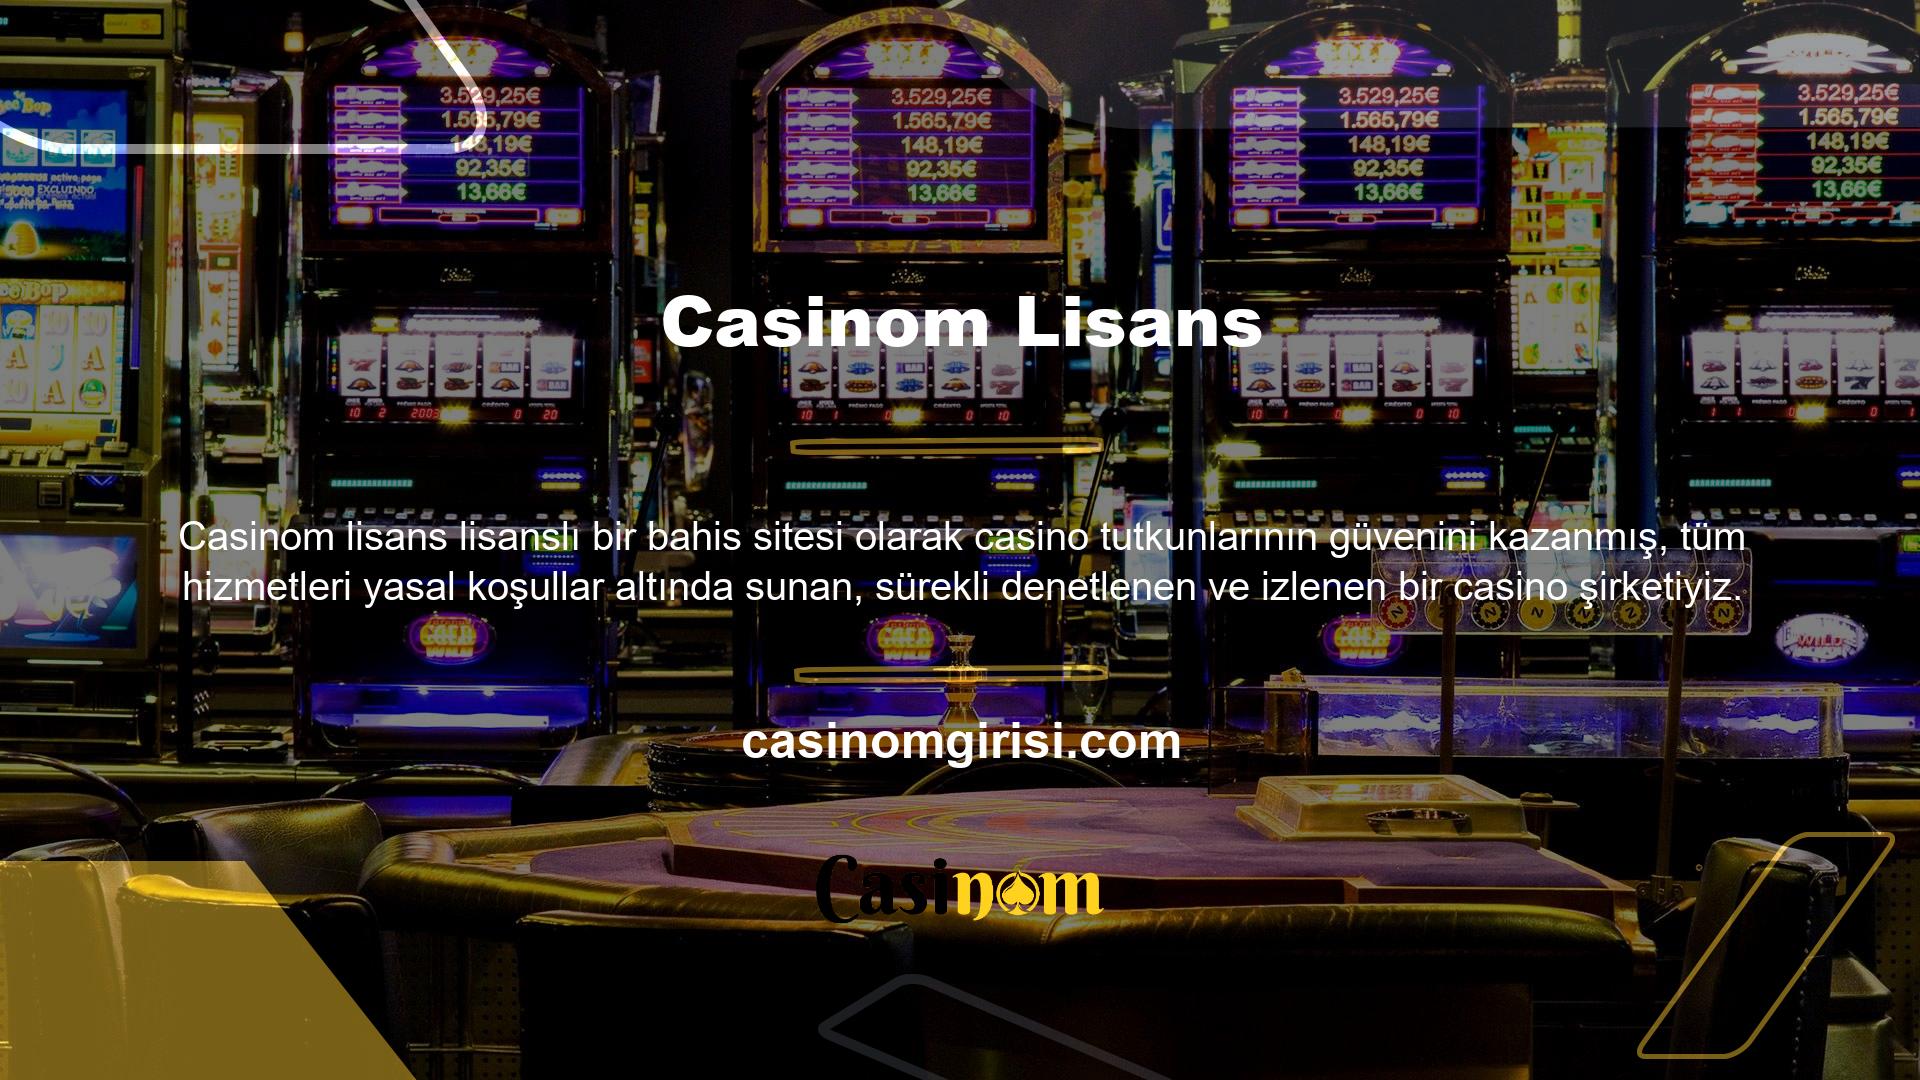 Casinom bahis sitesine bahis koyarken herhangi bir sorun yaşanırsa bahis tutkunları canlı destek hattına bağlanarak sorunu çözebilirler